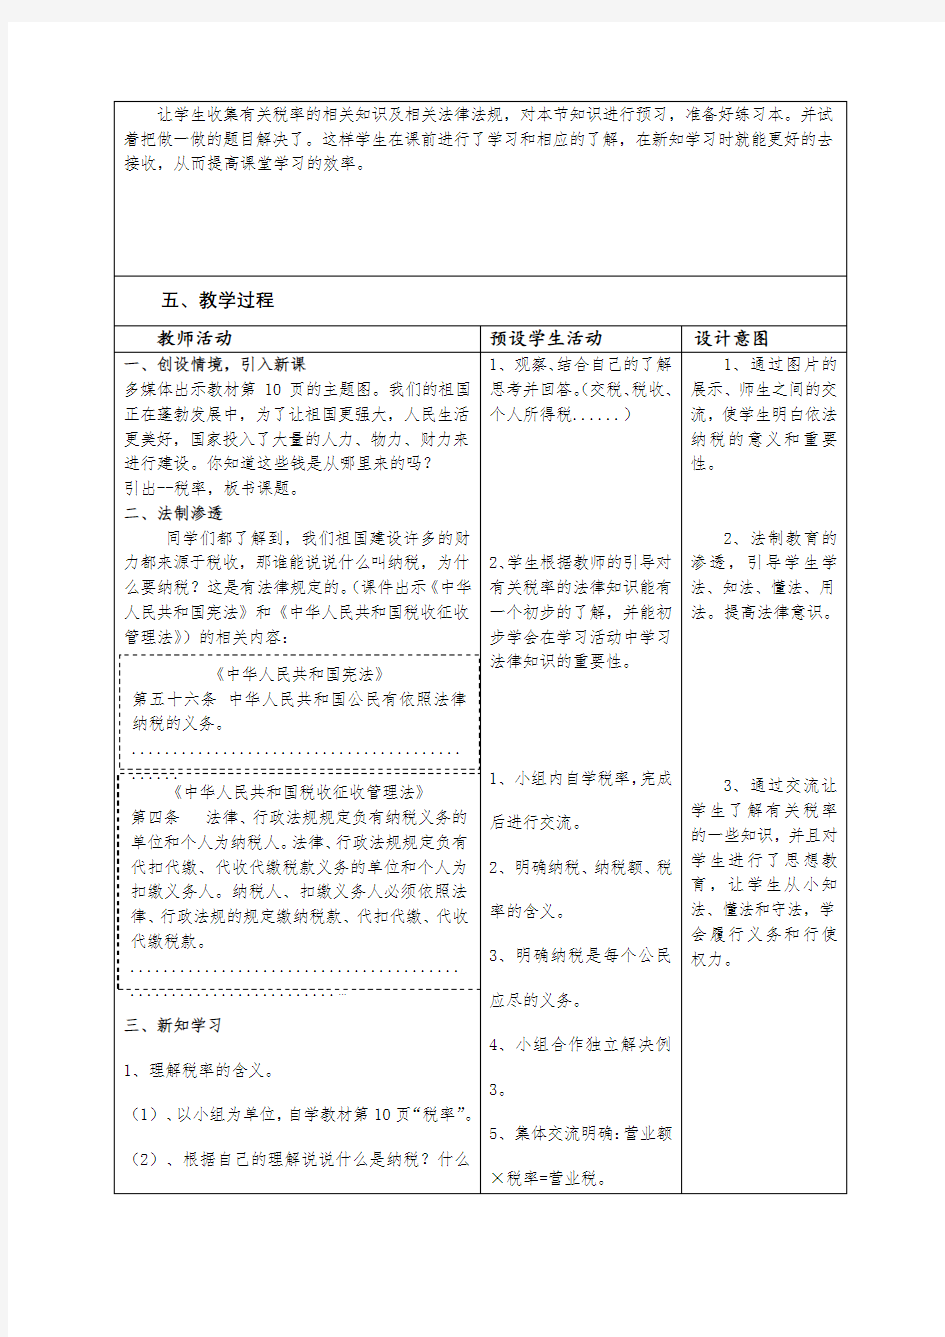 (刘云)2018国培计划作业1 教学设计模板